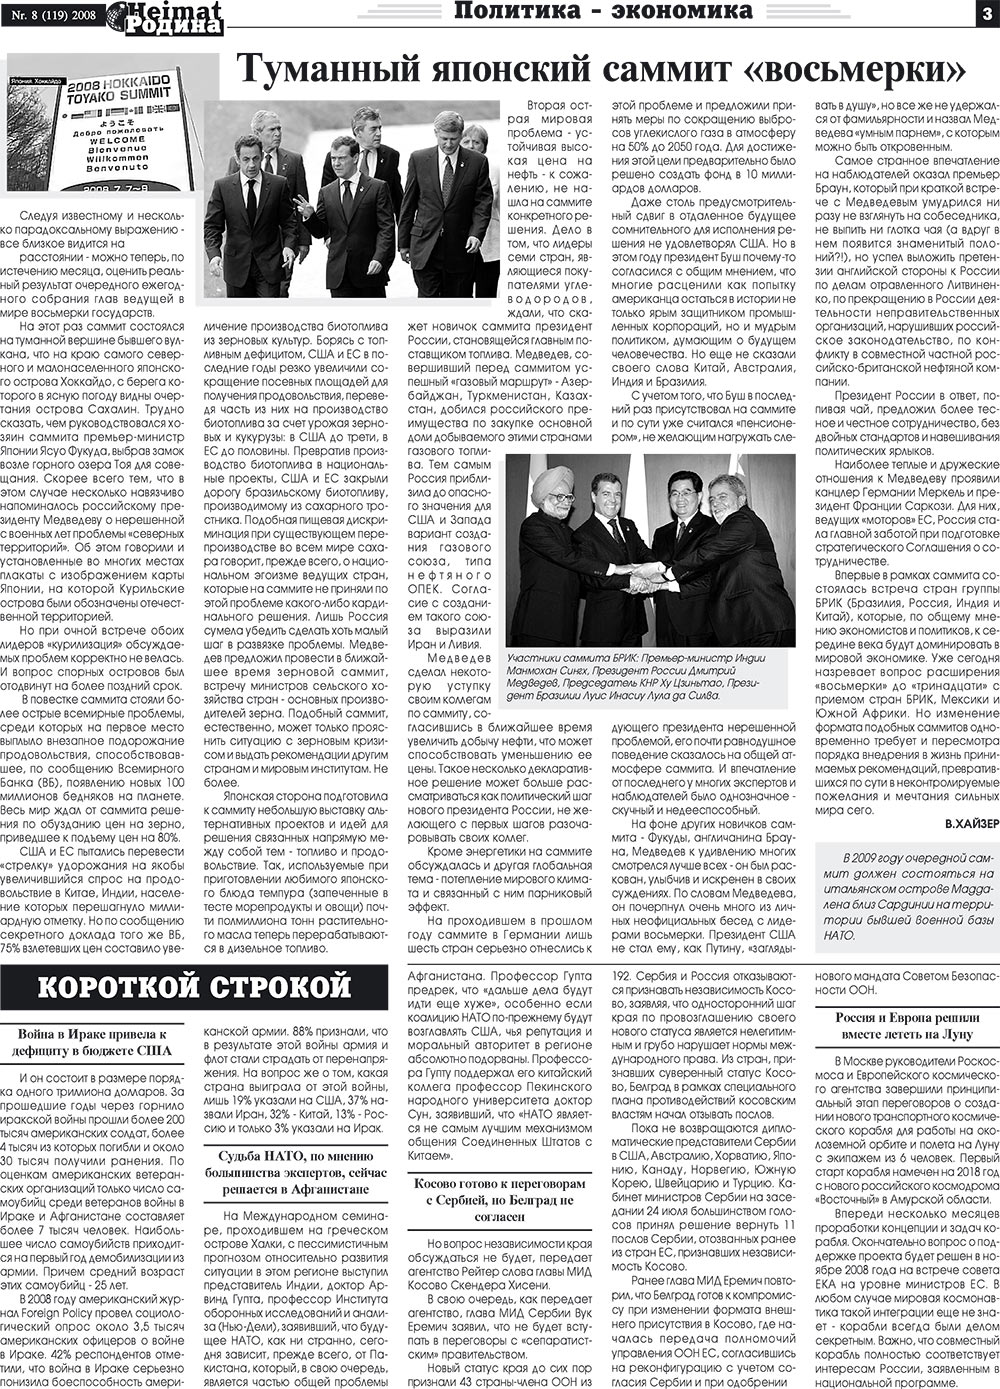 Heimat-Родина (газета). 2008 год, номер 8, стр. 3